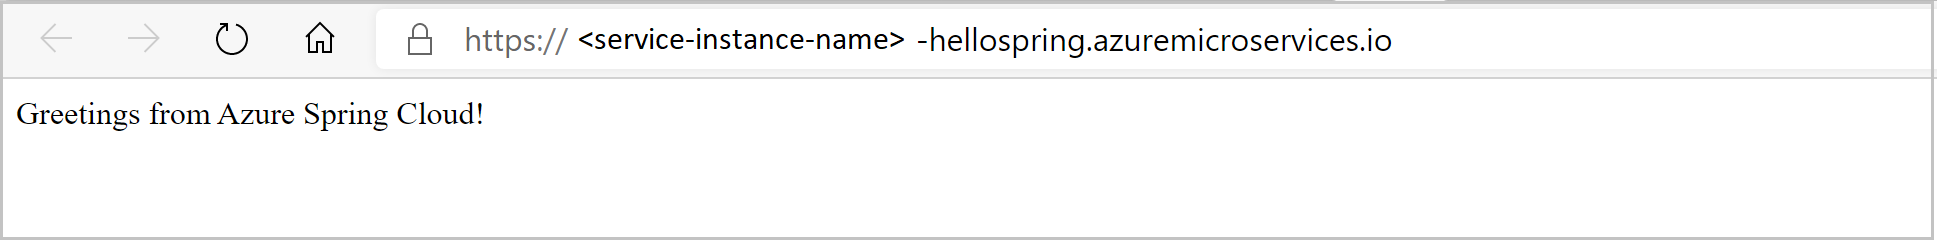 브라우저에 표시된 Hello Spring 앱의 스크린샷.